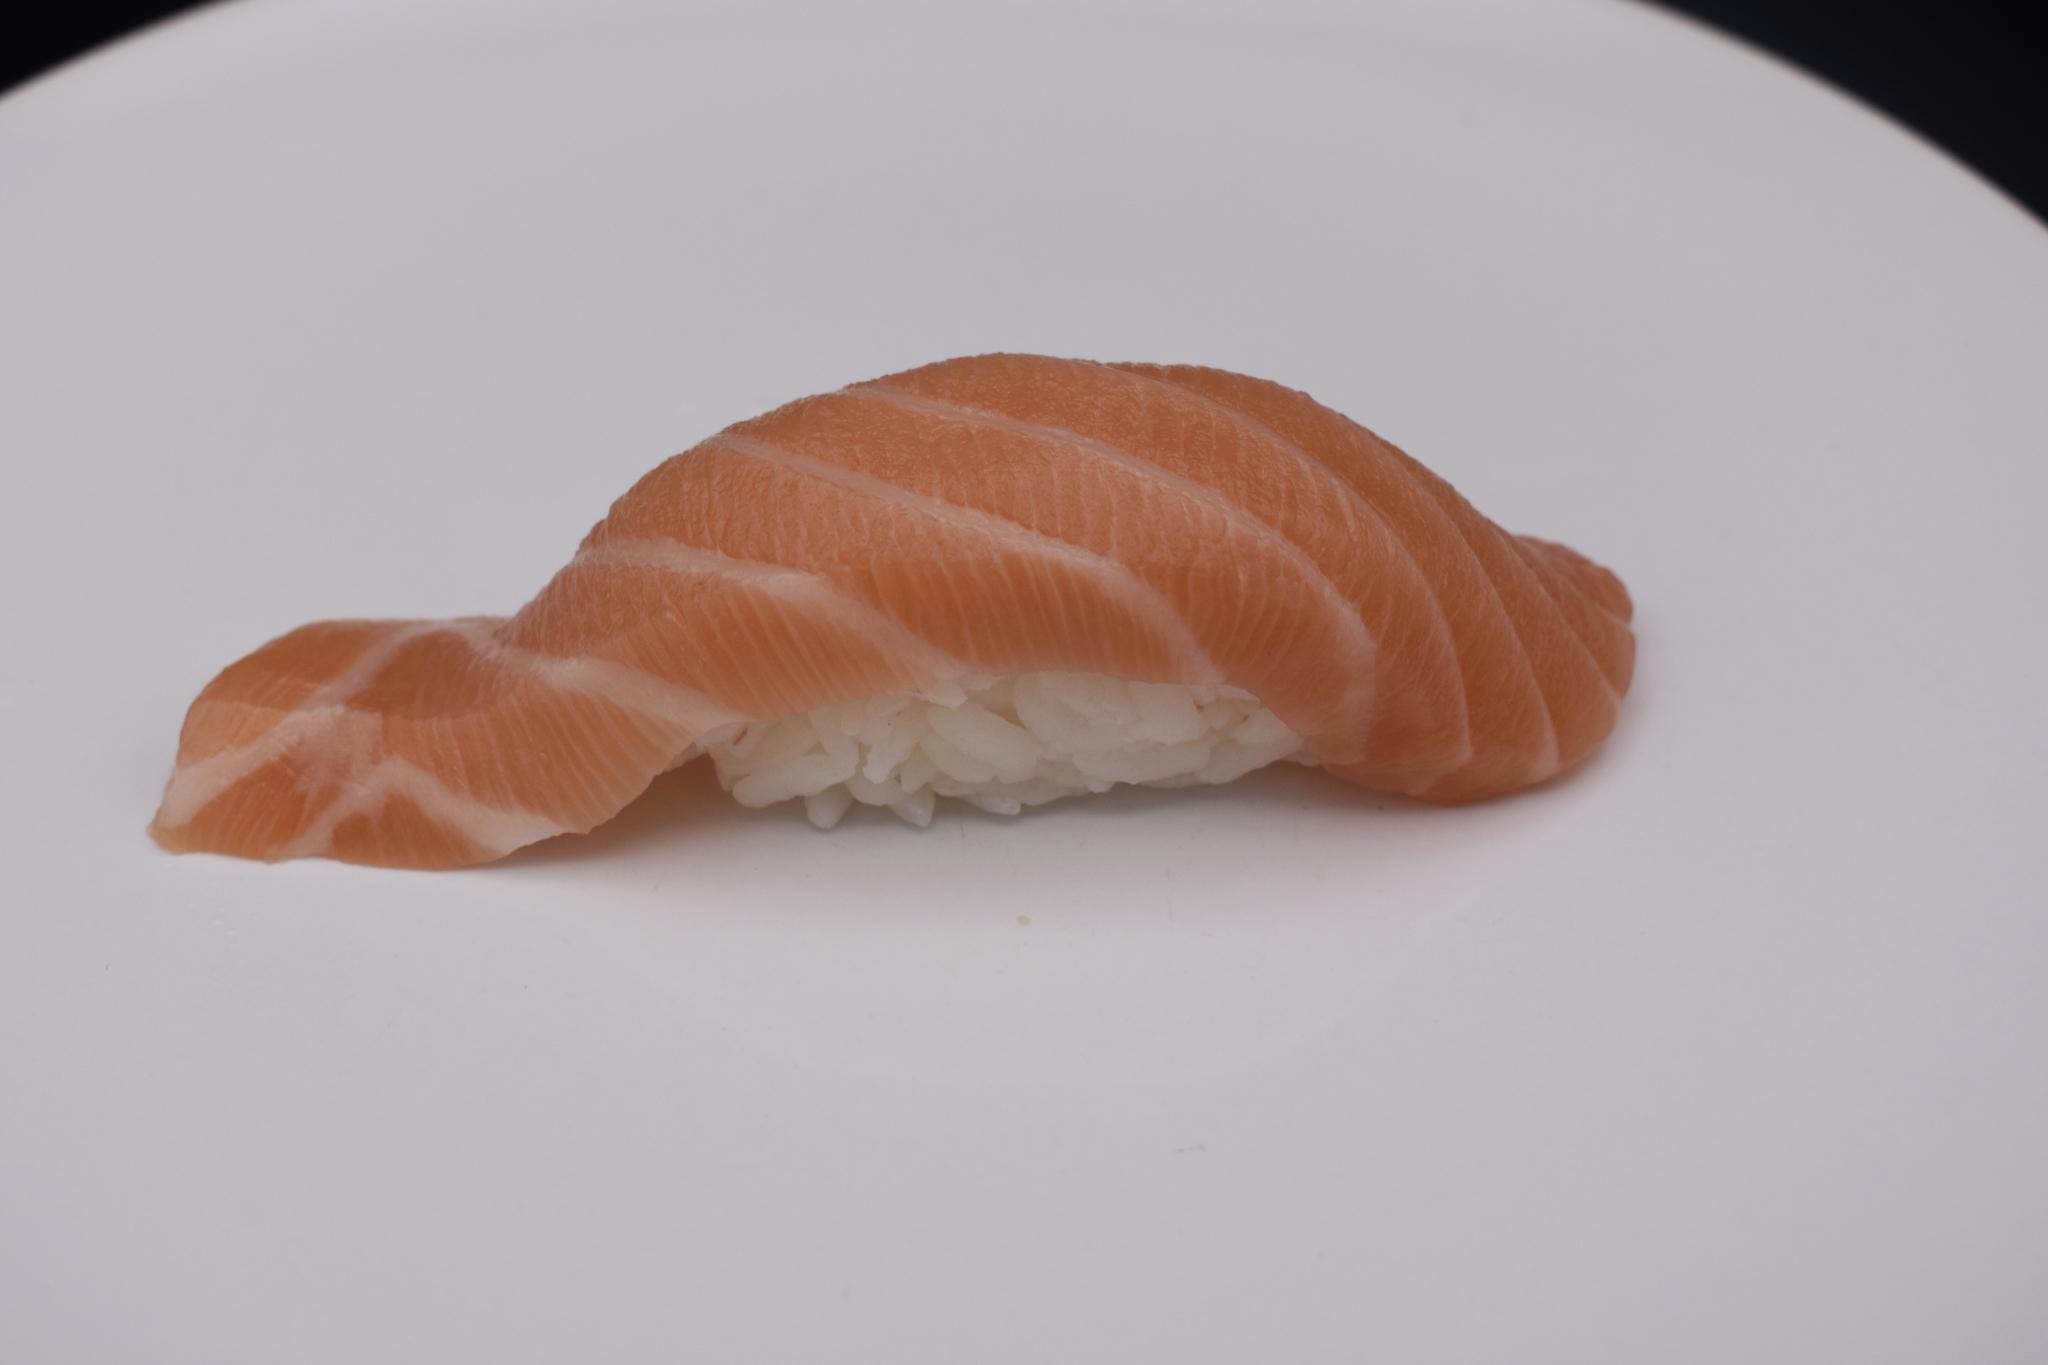 50. Salmon